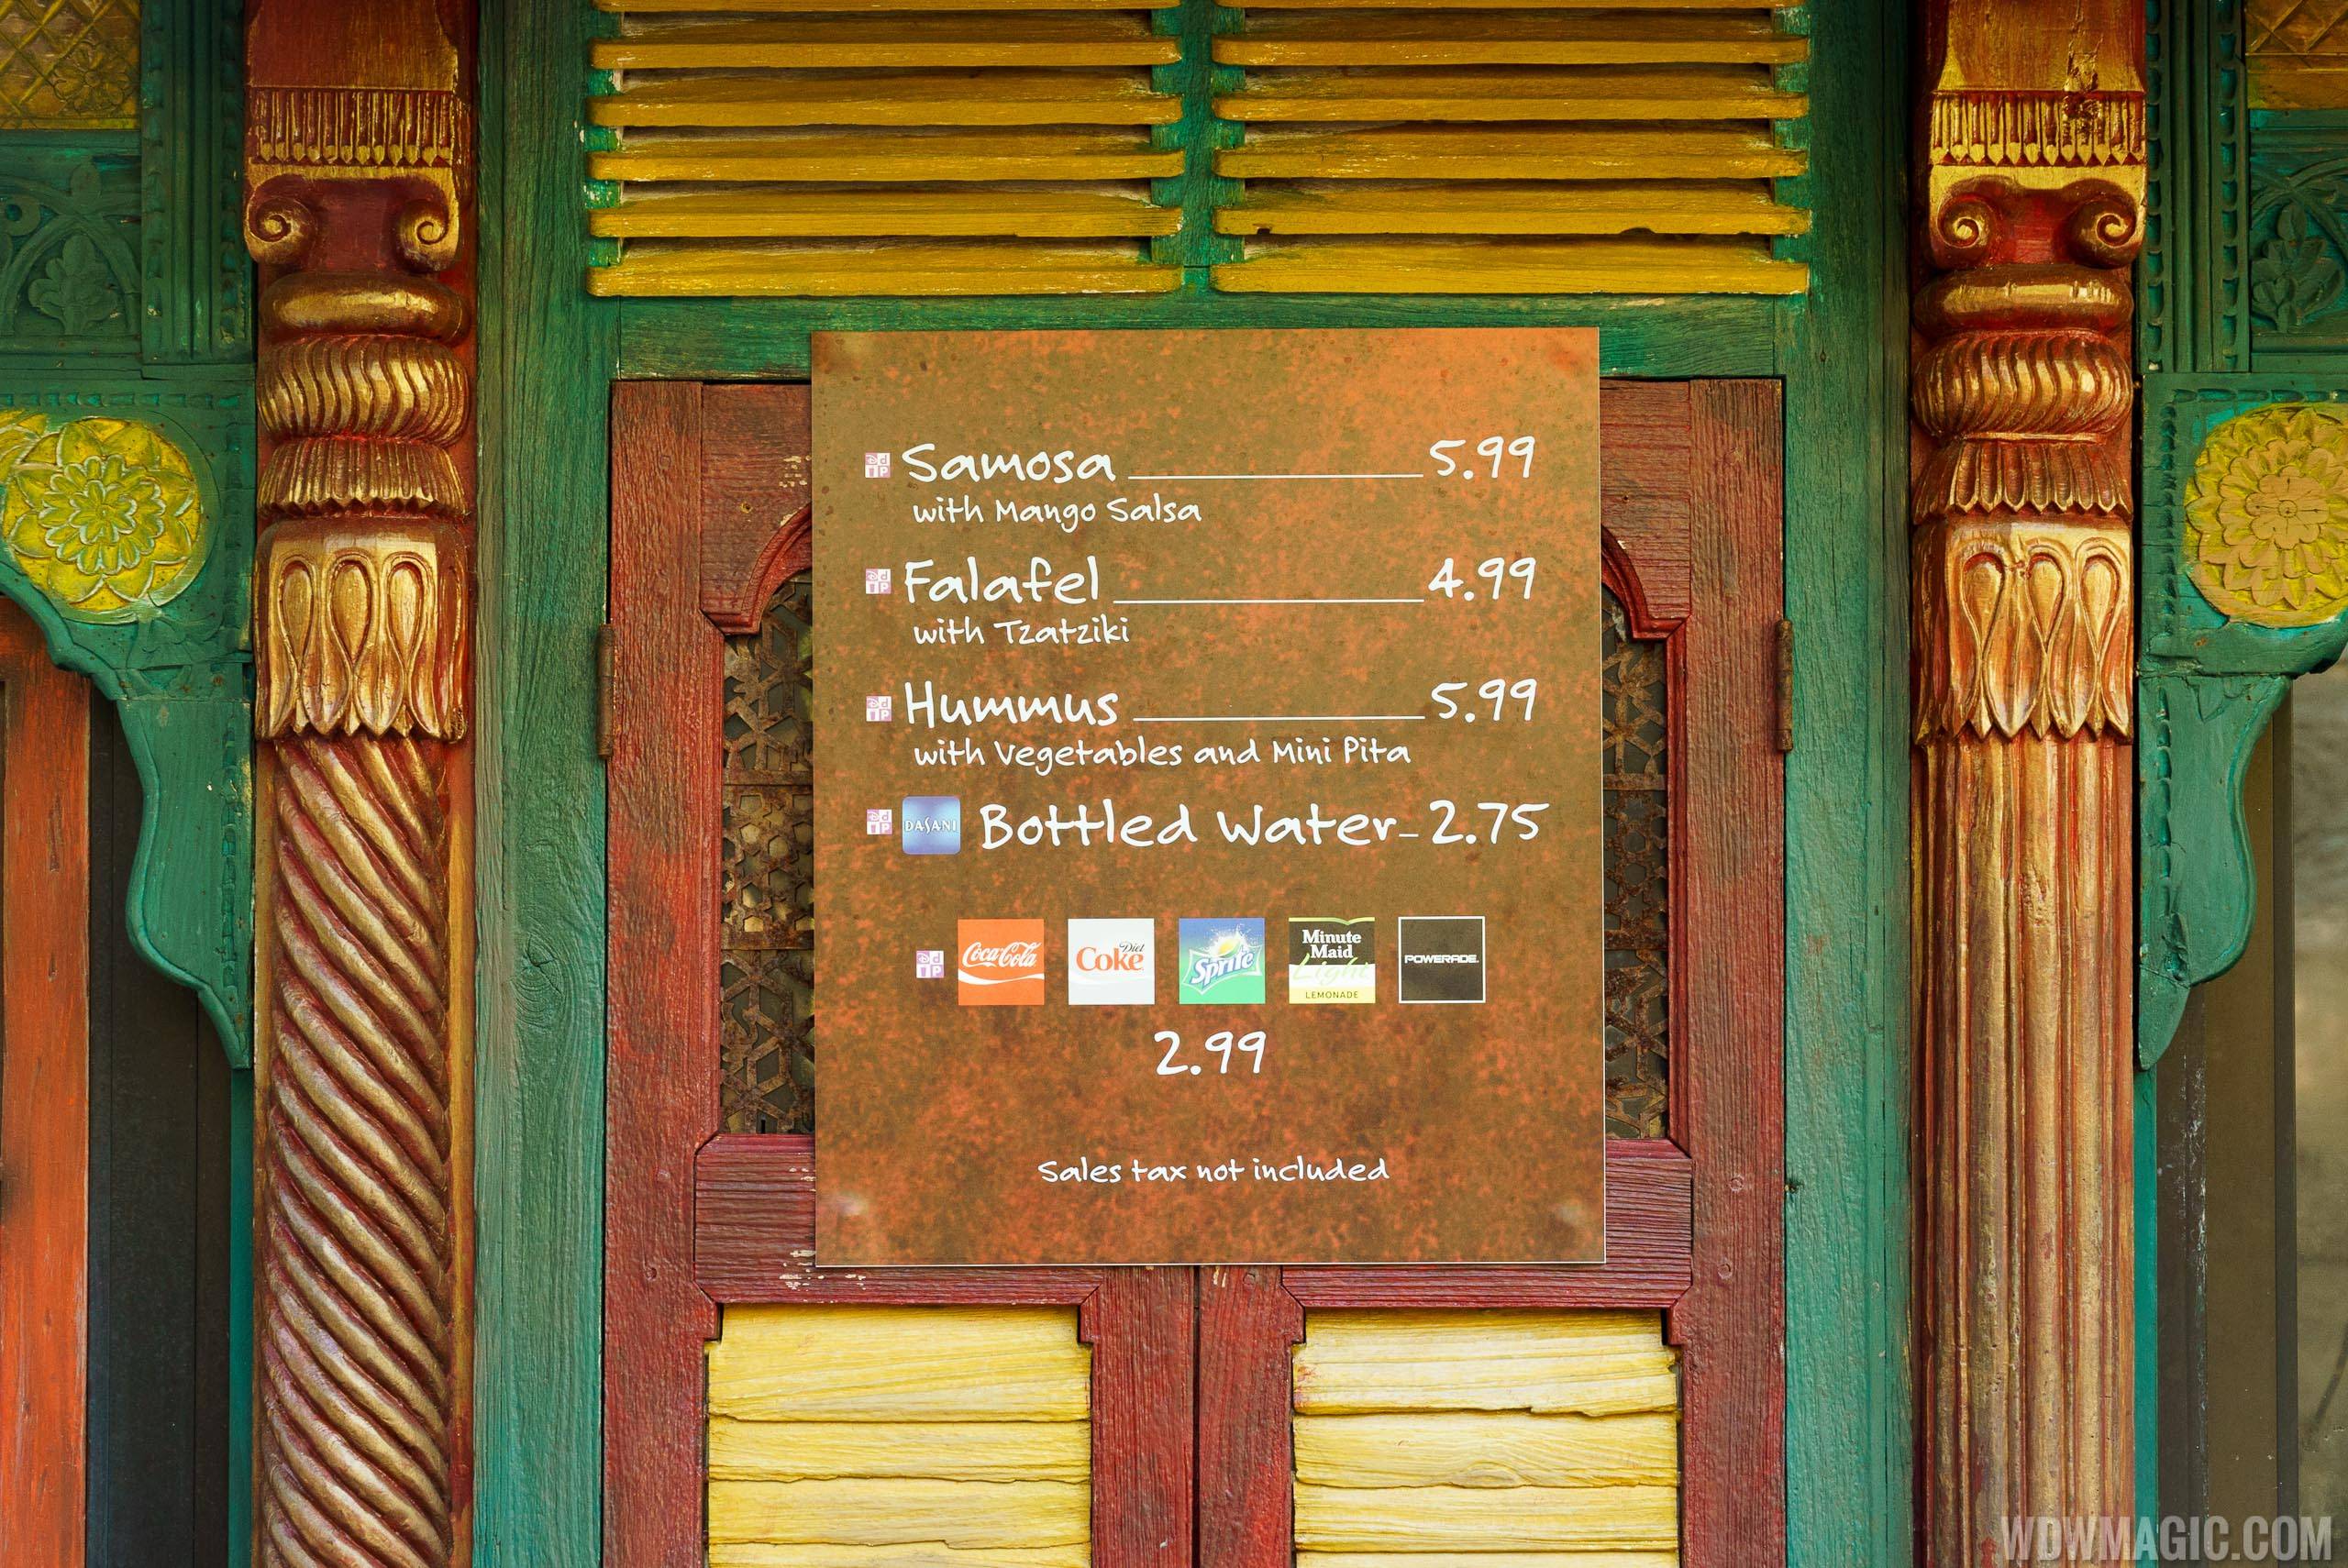 Mr. Kamal's kiosk menu